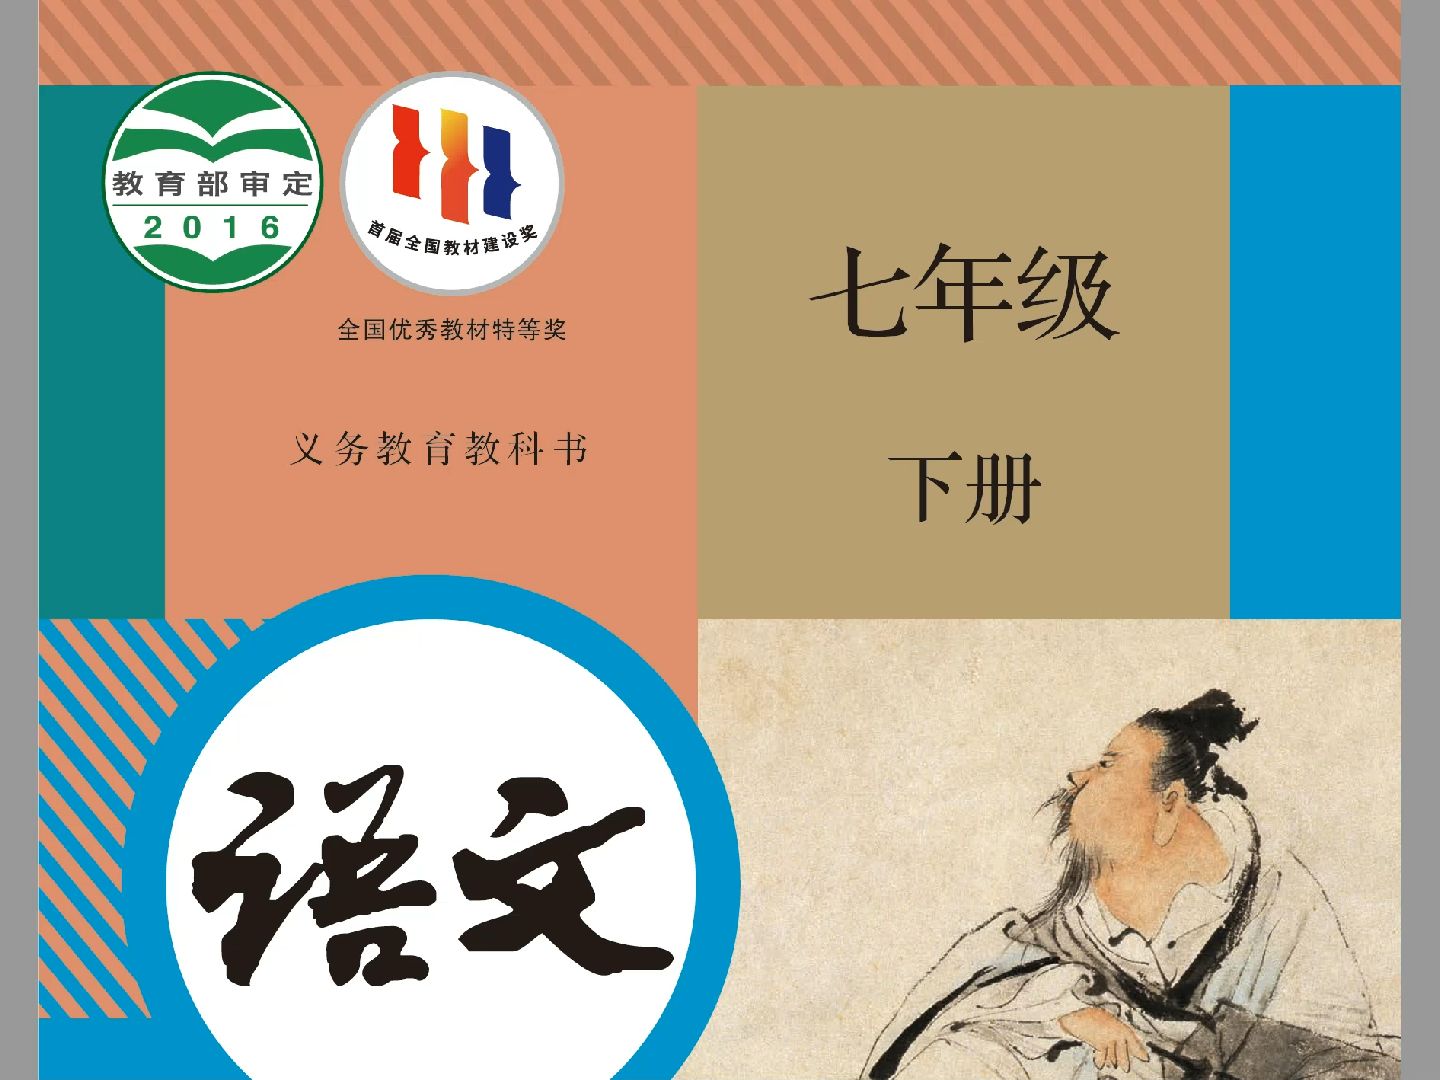 大陆人教版和台湾康轩版初中一年级下册古诗比较